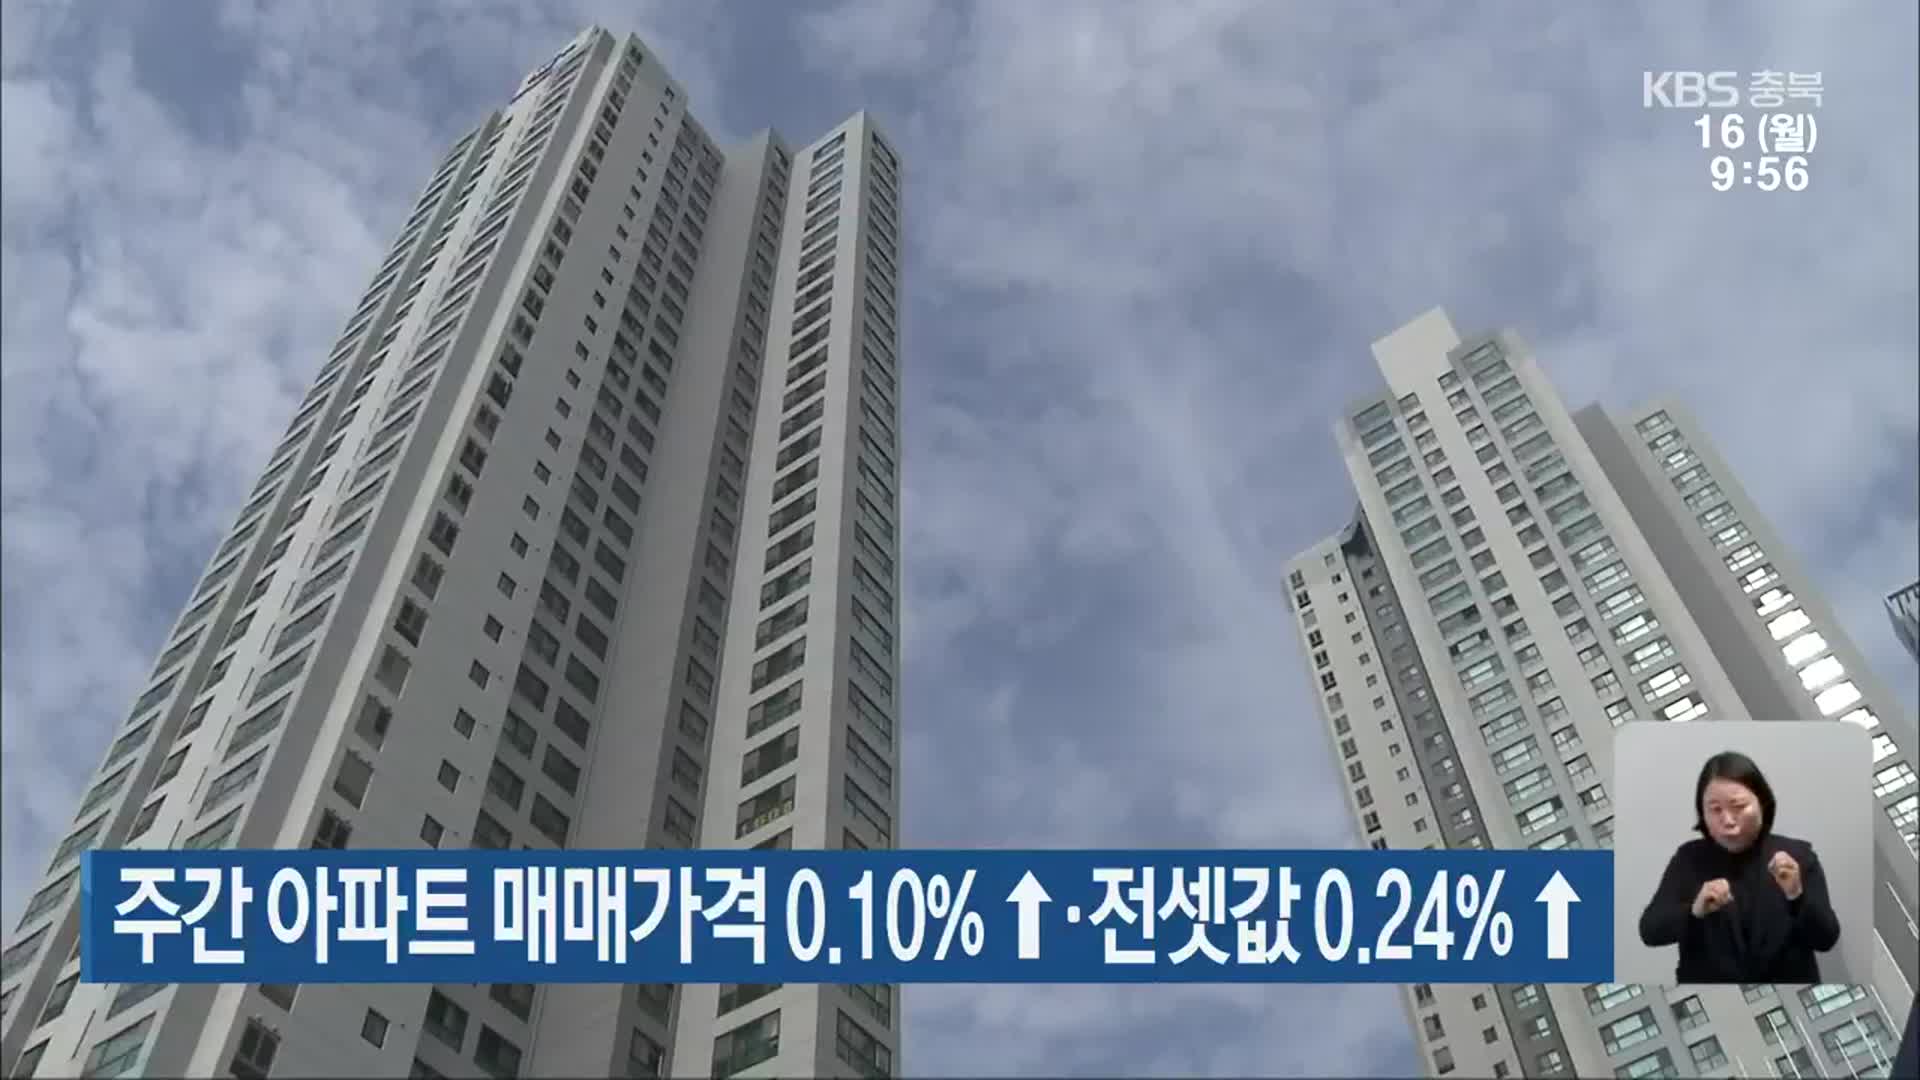 주간 아파트 매매가격 0.10%↑·전셋값 0.24%↑